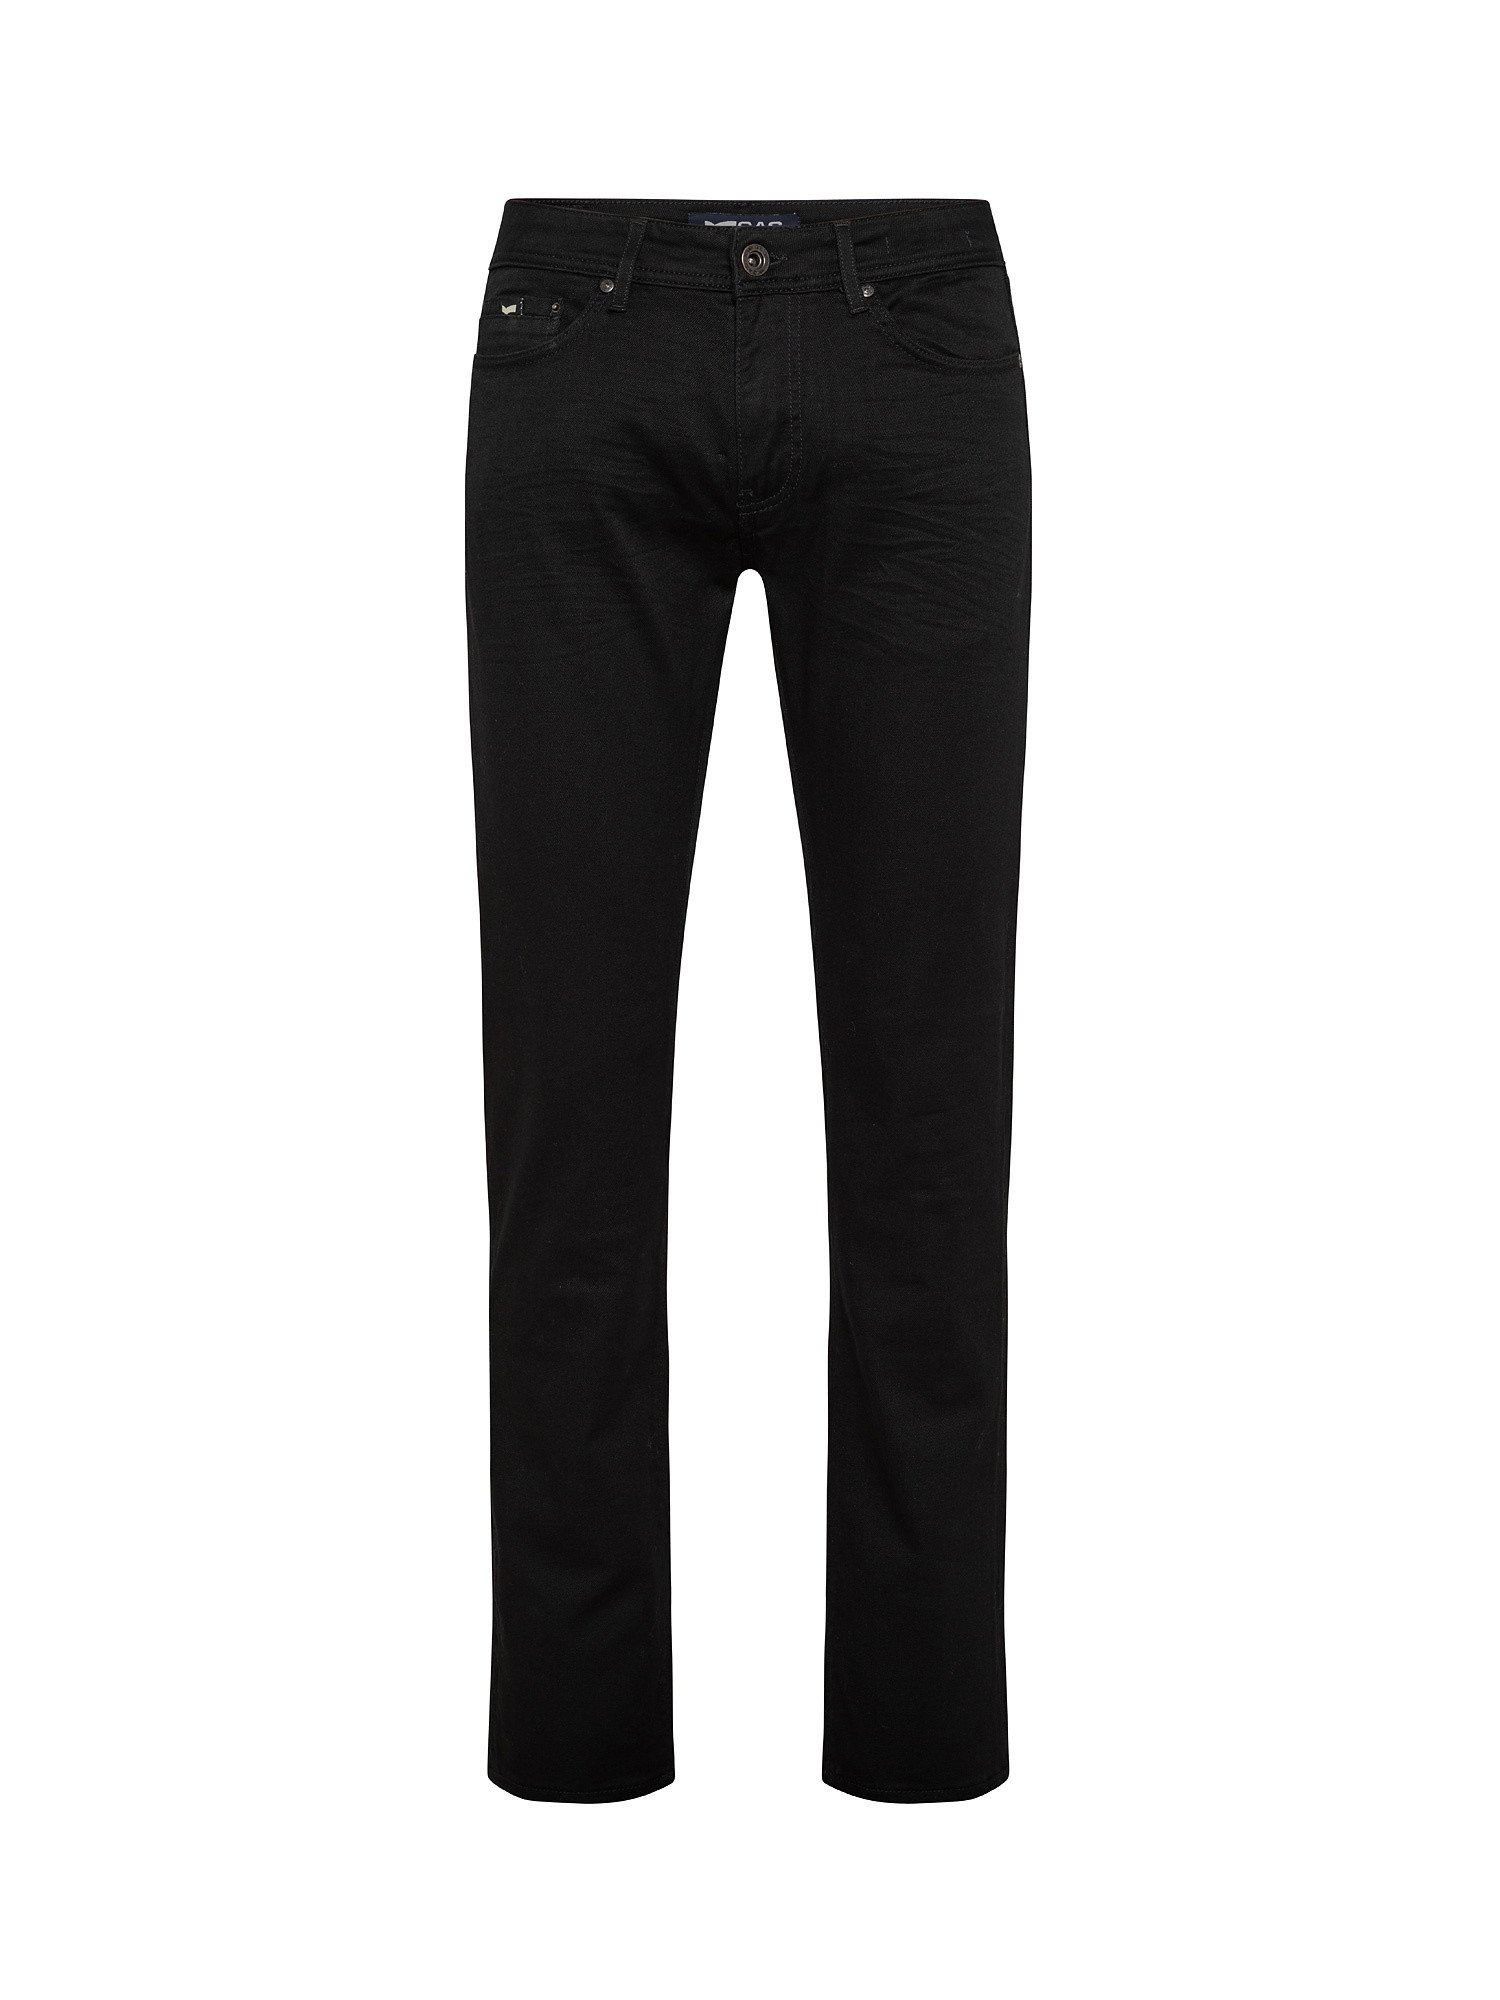 Jeans slim  elasticizzati, Denim, large image number 0